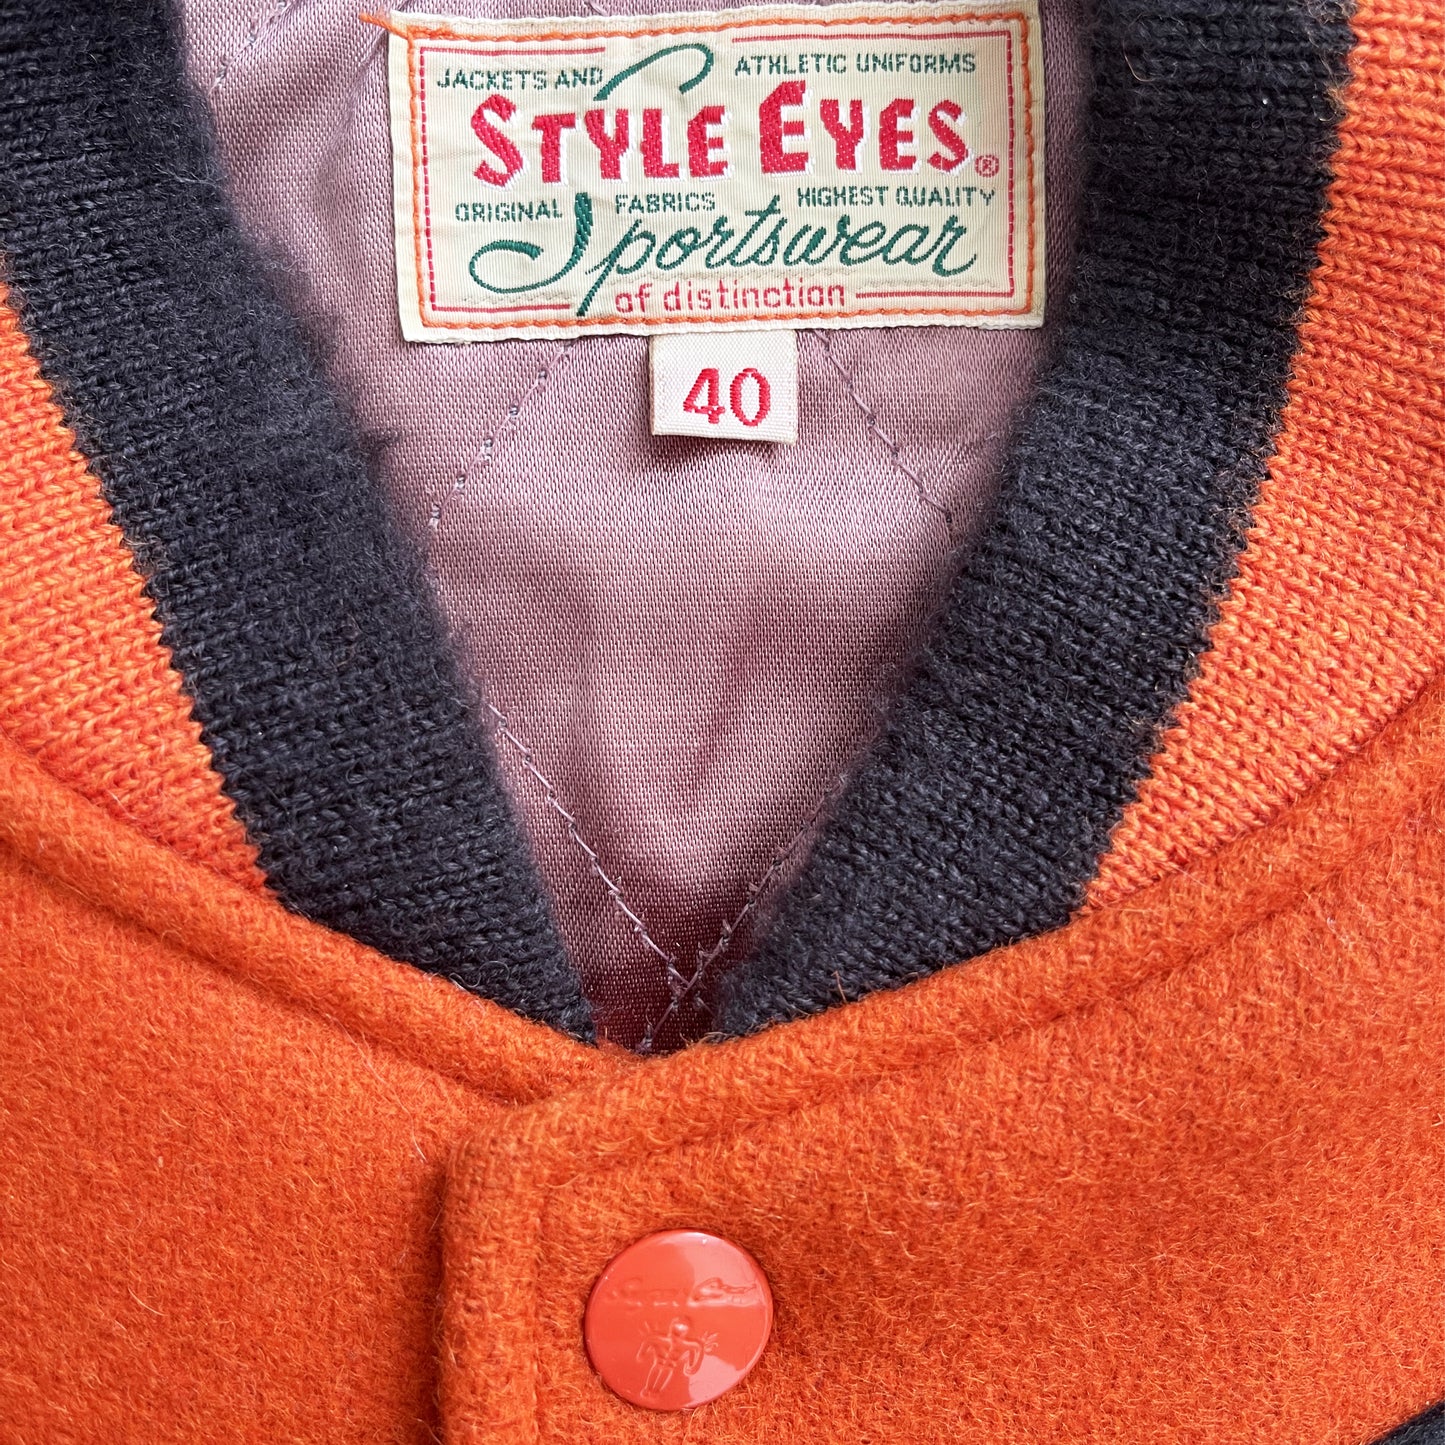 Style Eyes Varsity Jacket